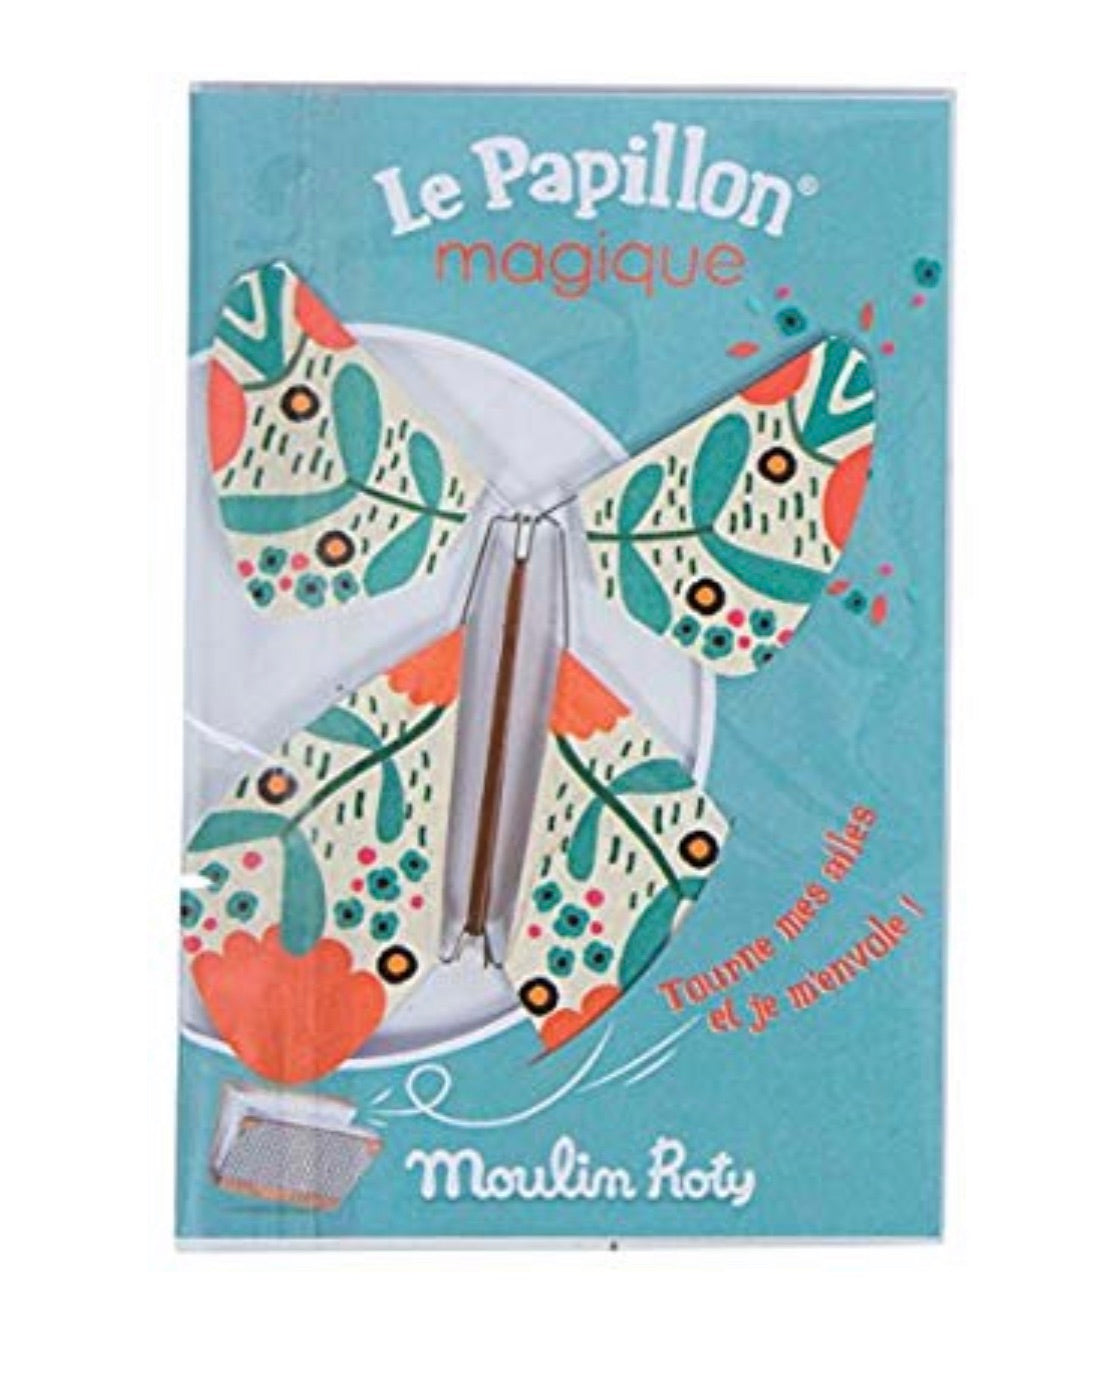 Let Papillon Magique - Magic Butterfly